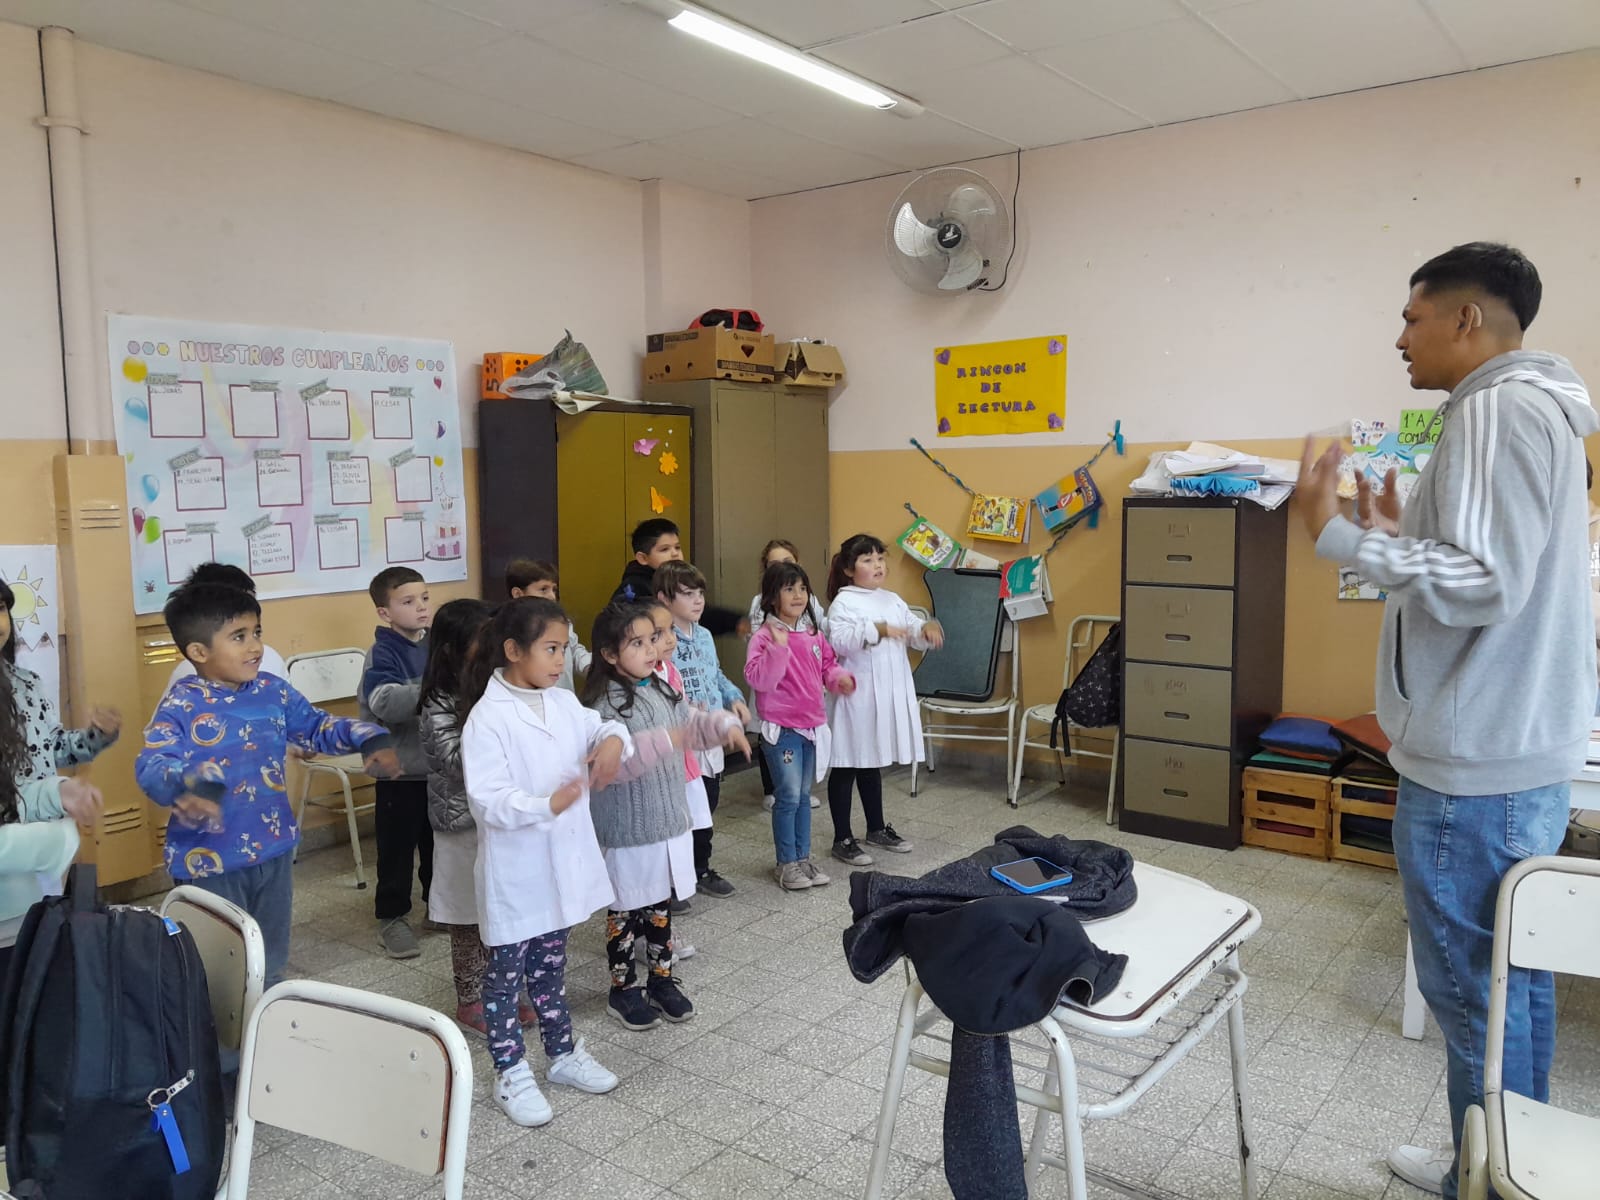 Alumnos de la Escuela Primaria N324 aprendieron el Himno Nacional en Lengua de Señas Argentina4